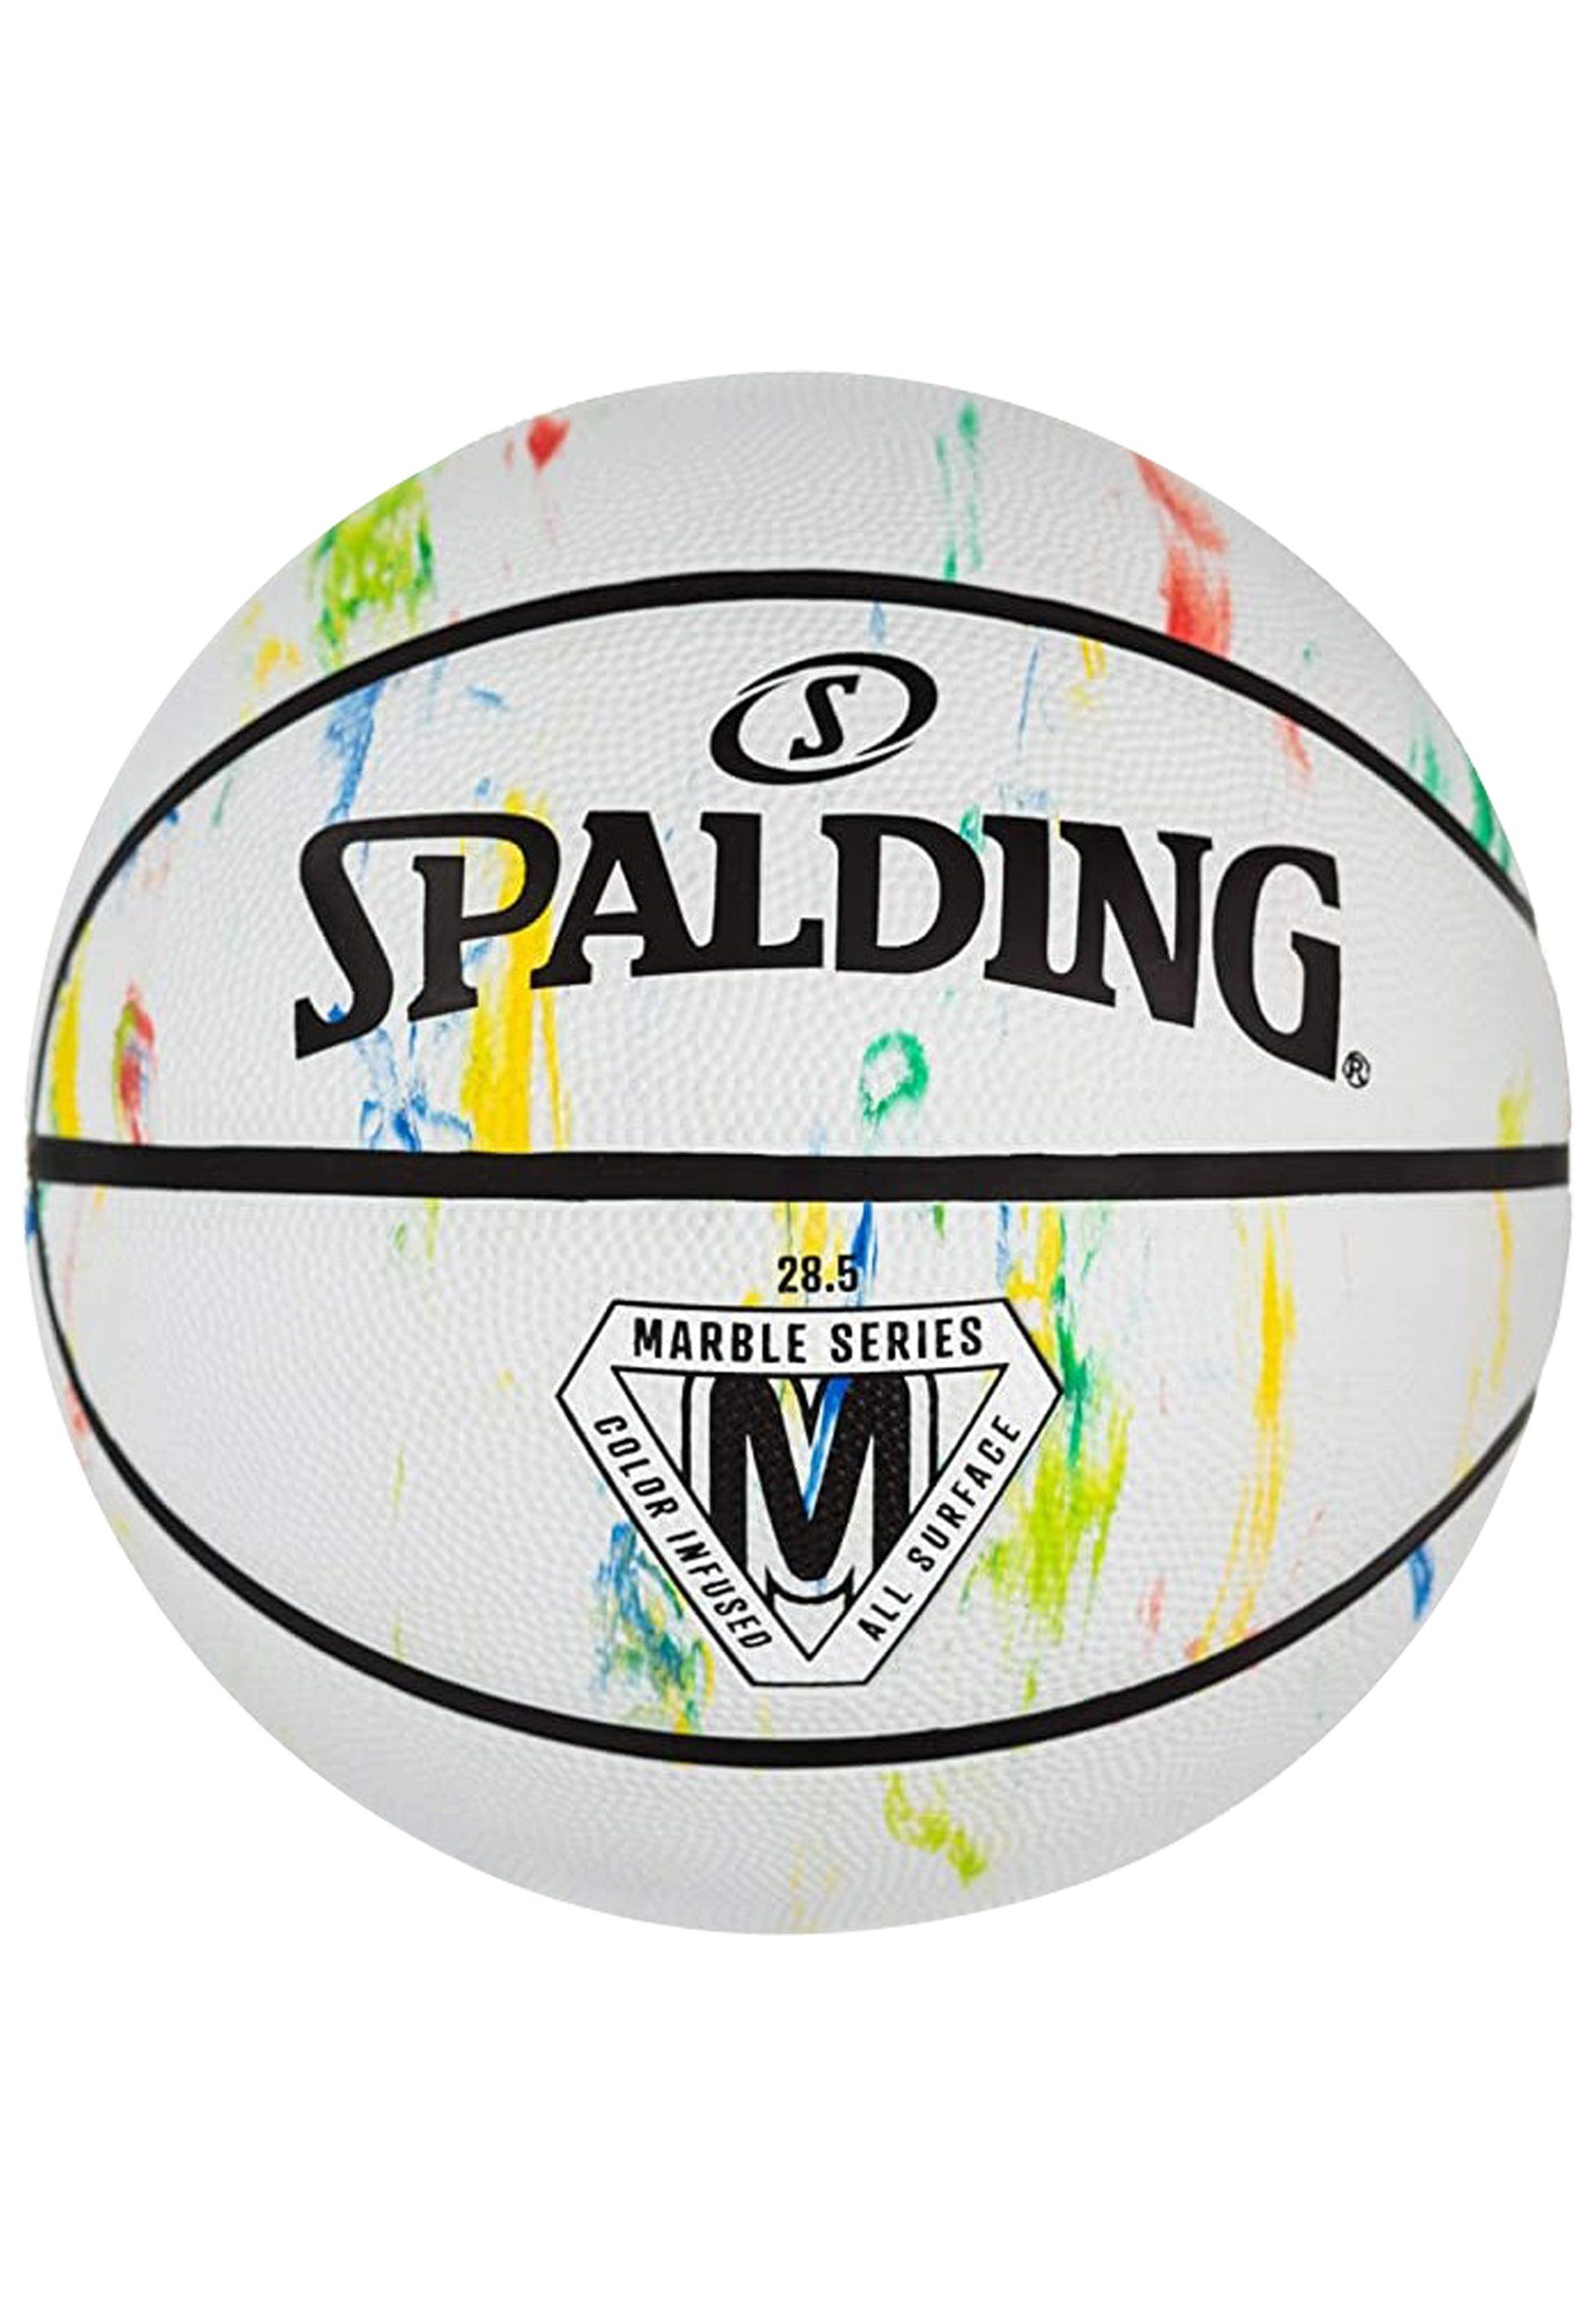 [Im Angebot zum niedrigsten Online-Preis] Spalding Fußball Spalding Marble